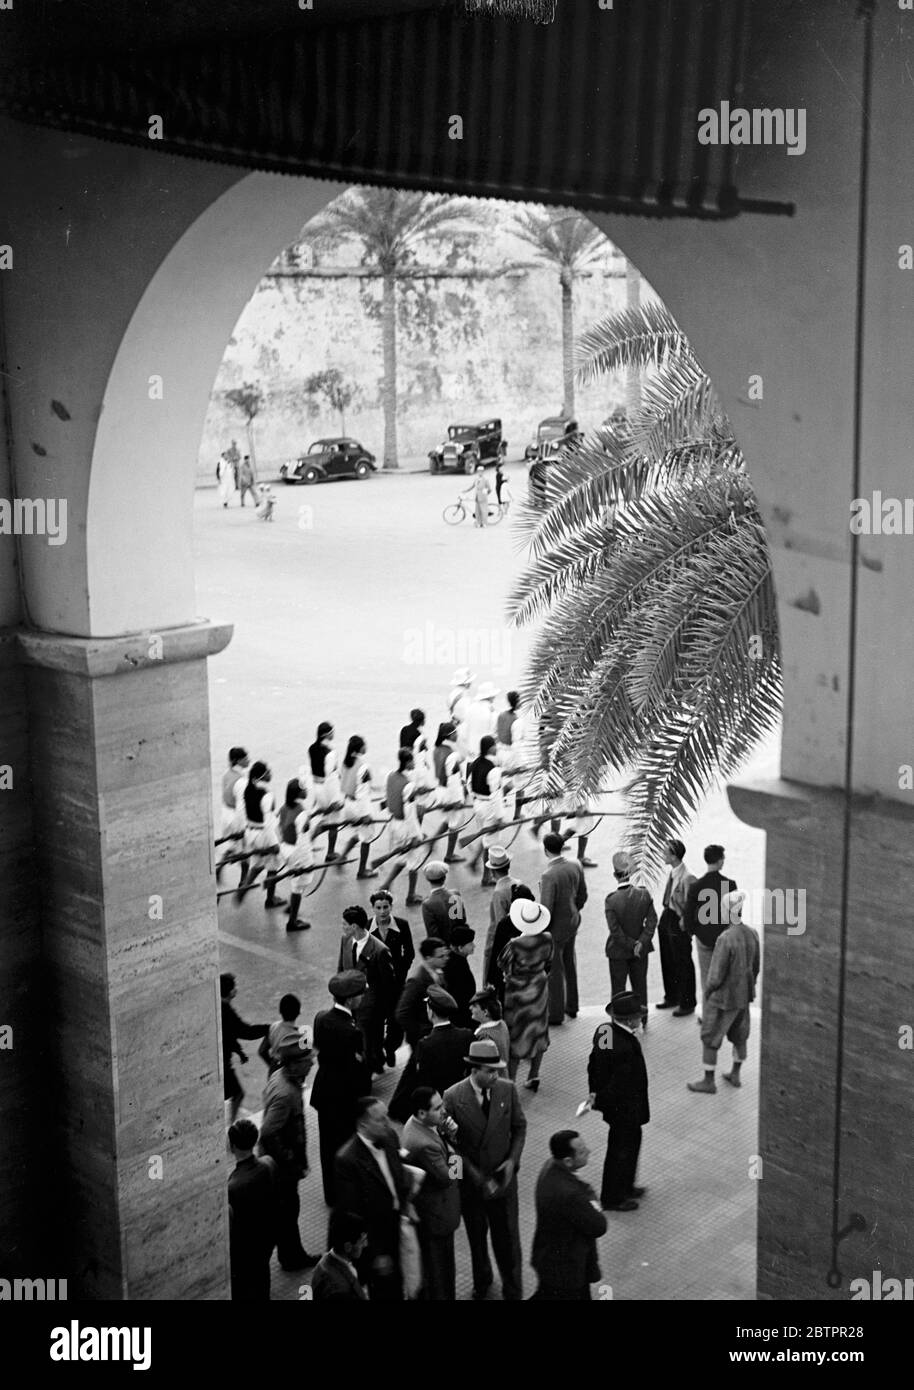 Tripoli. Truppe in parata in uniforme tradizionale, con ufficiali italiani in uniforme. Foto Stock